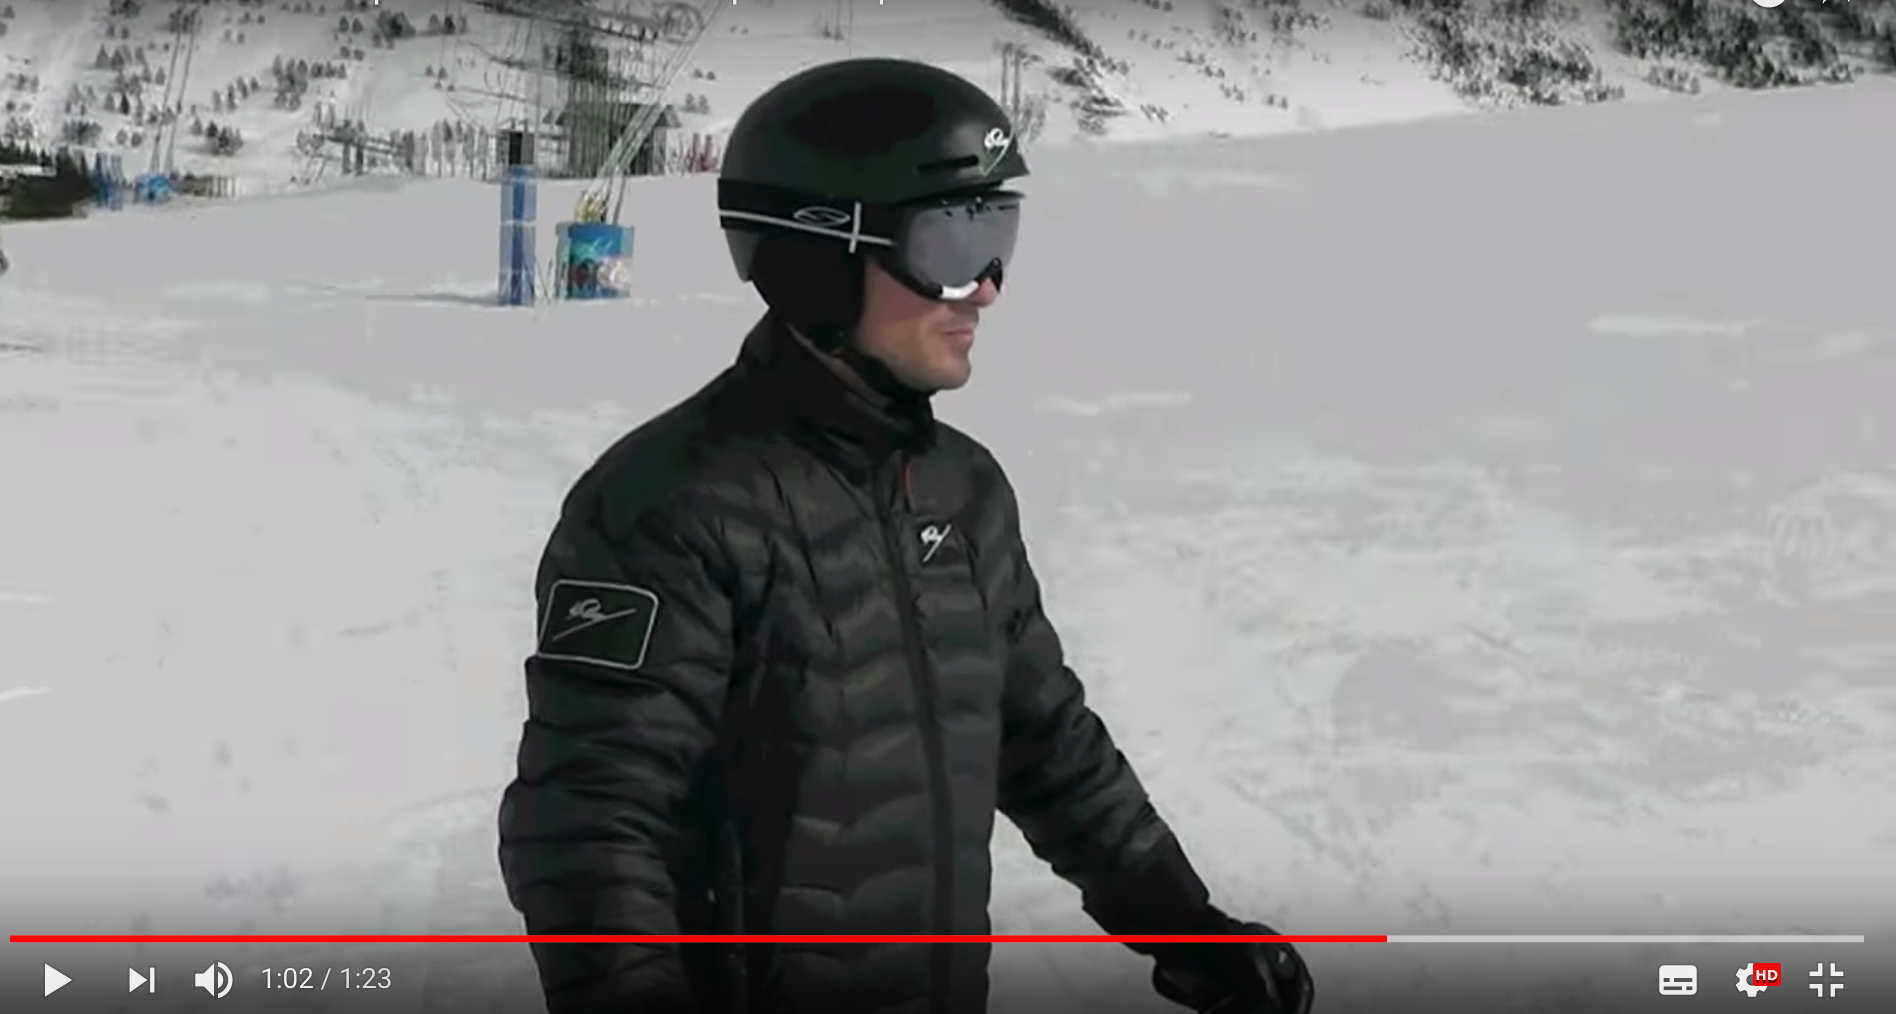 Youtube ya sustituye a los profesores de esquí